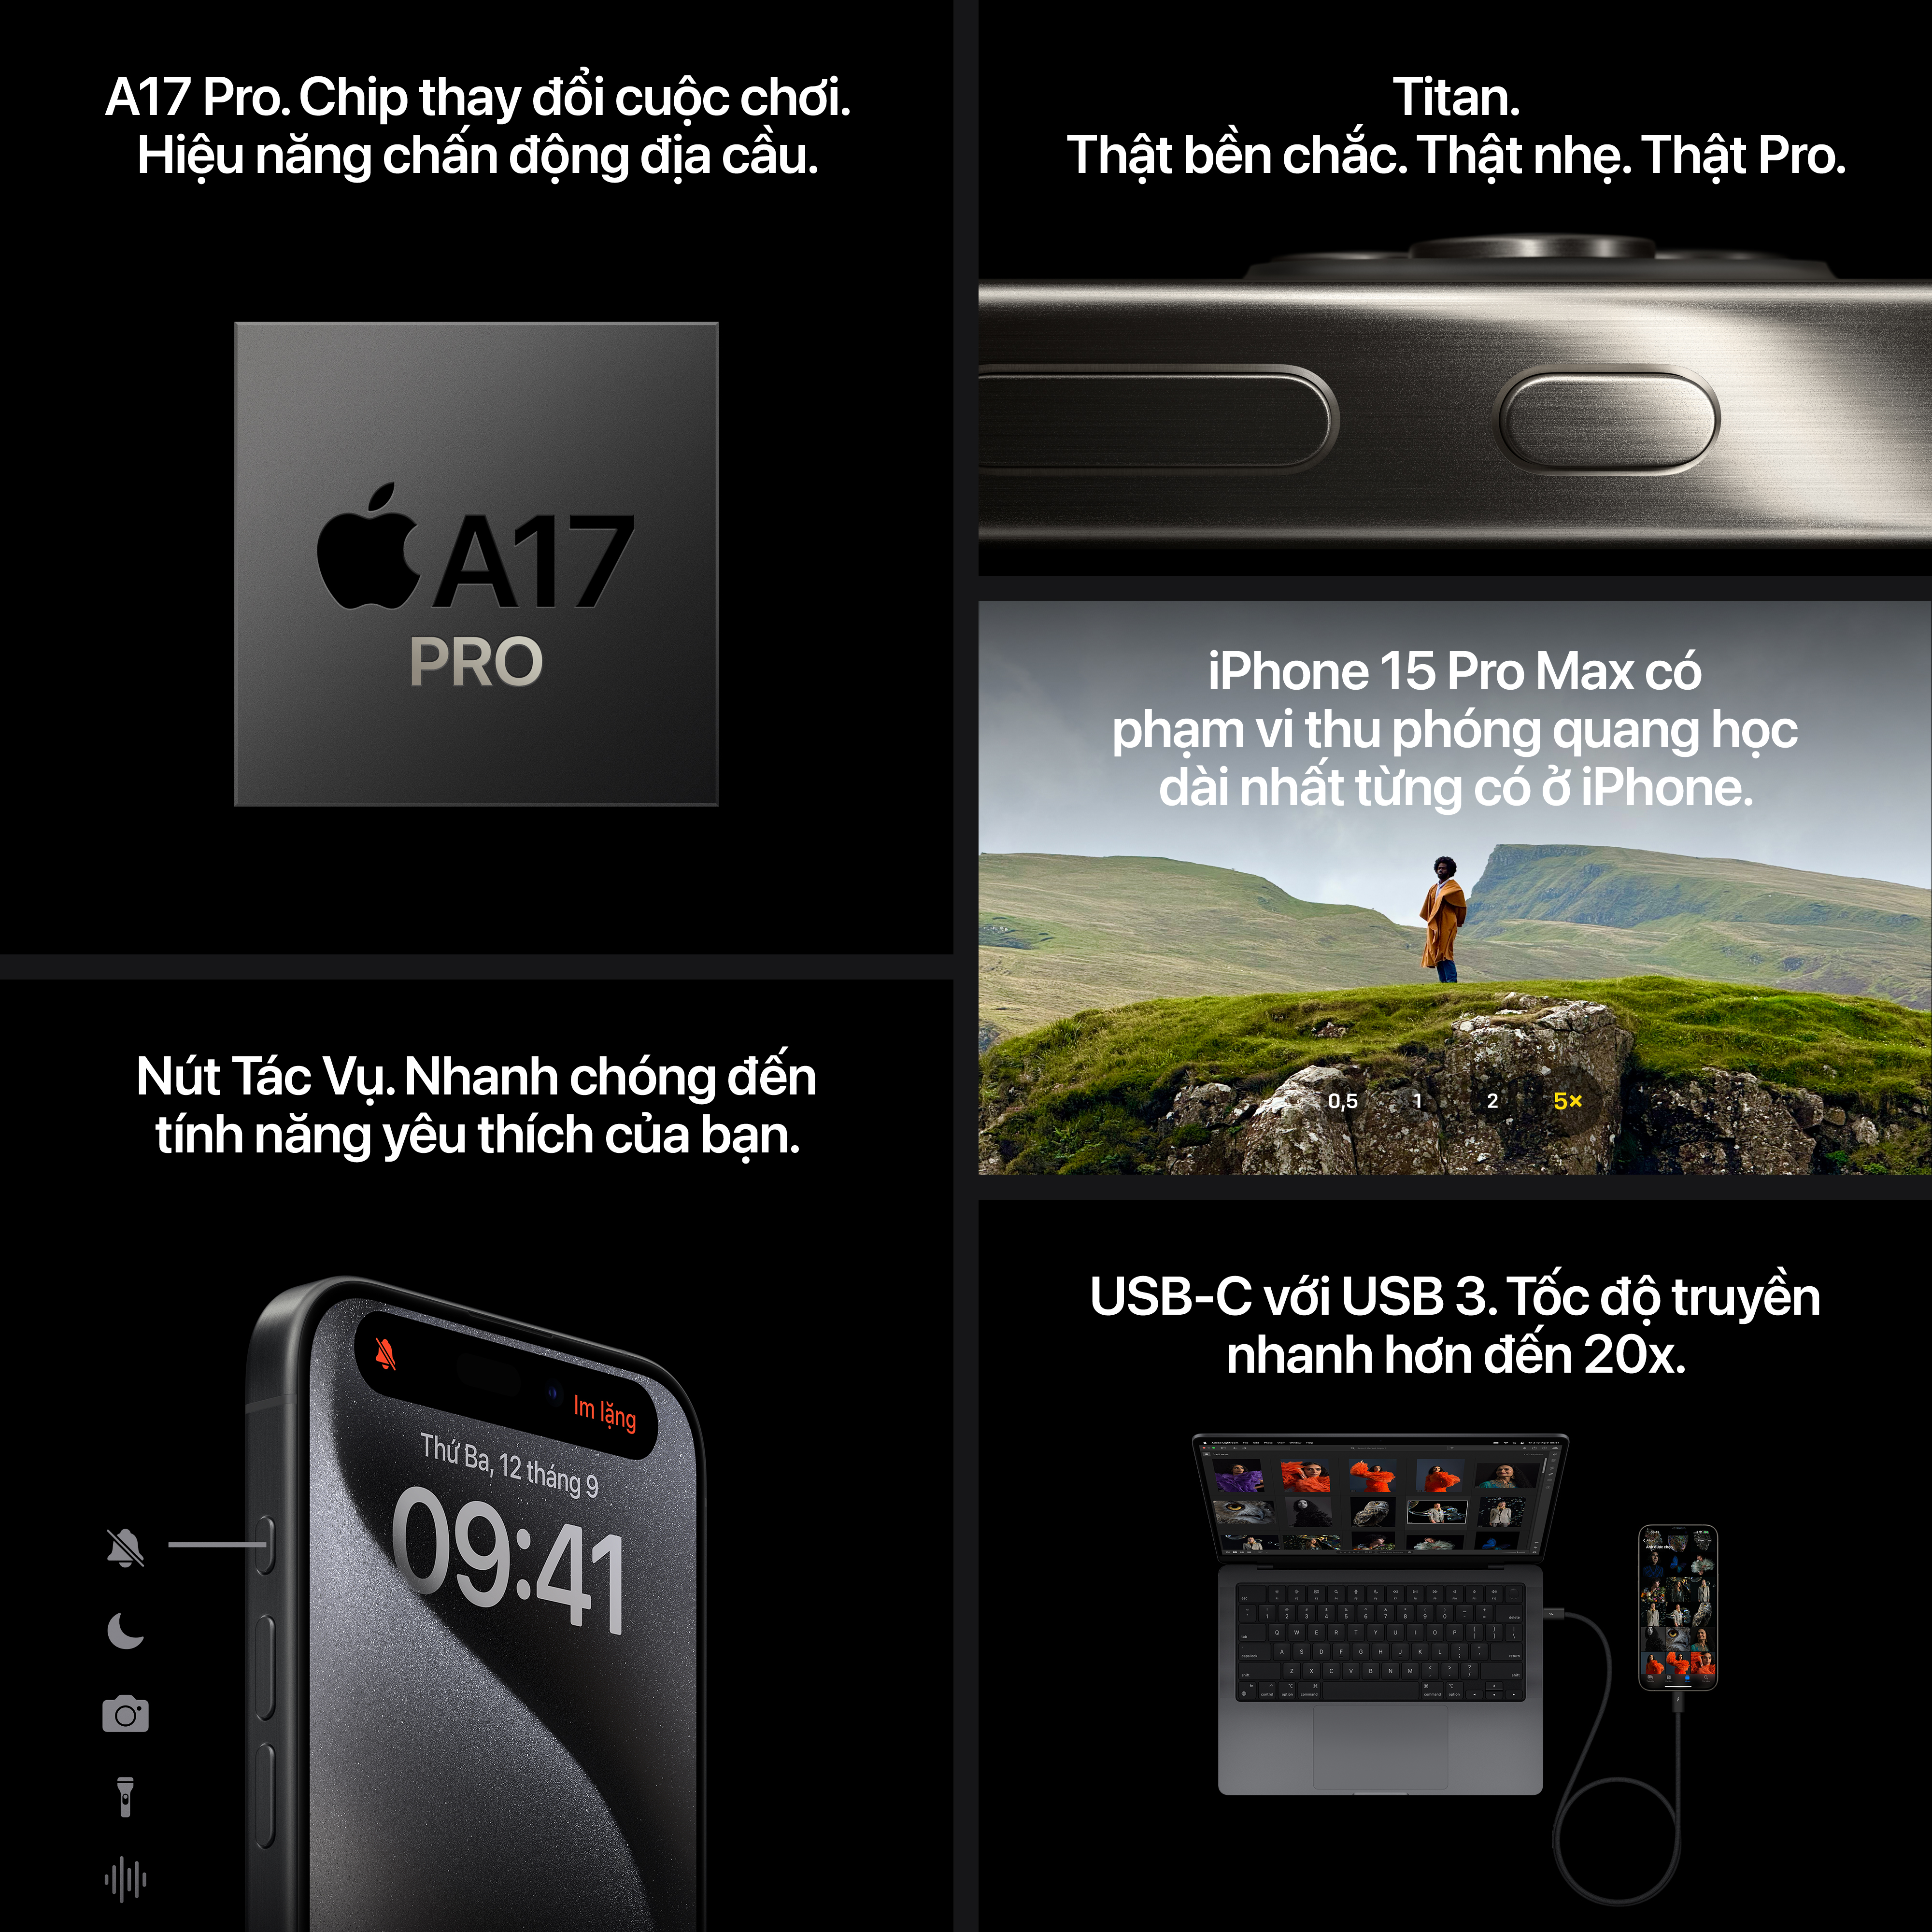 iPhone 15 Pro Max Tính Năng & Thông Số Kỹ Thuật